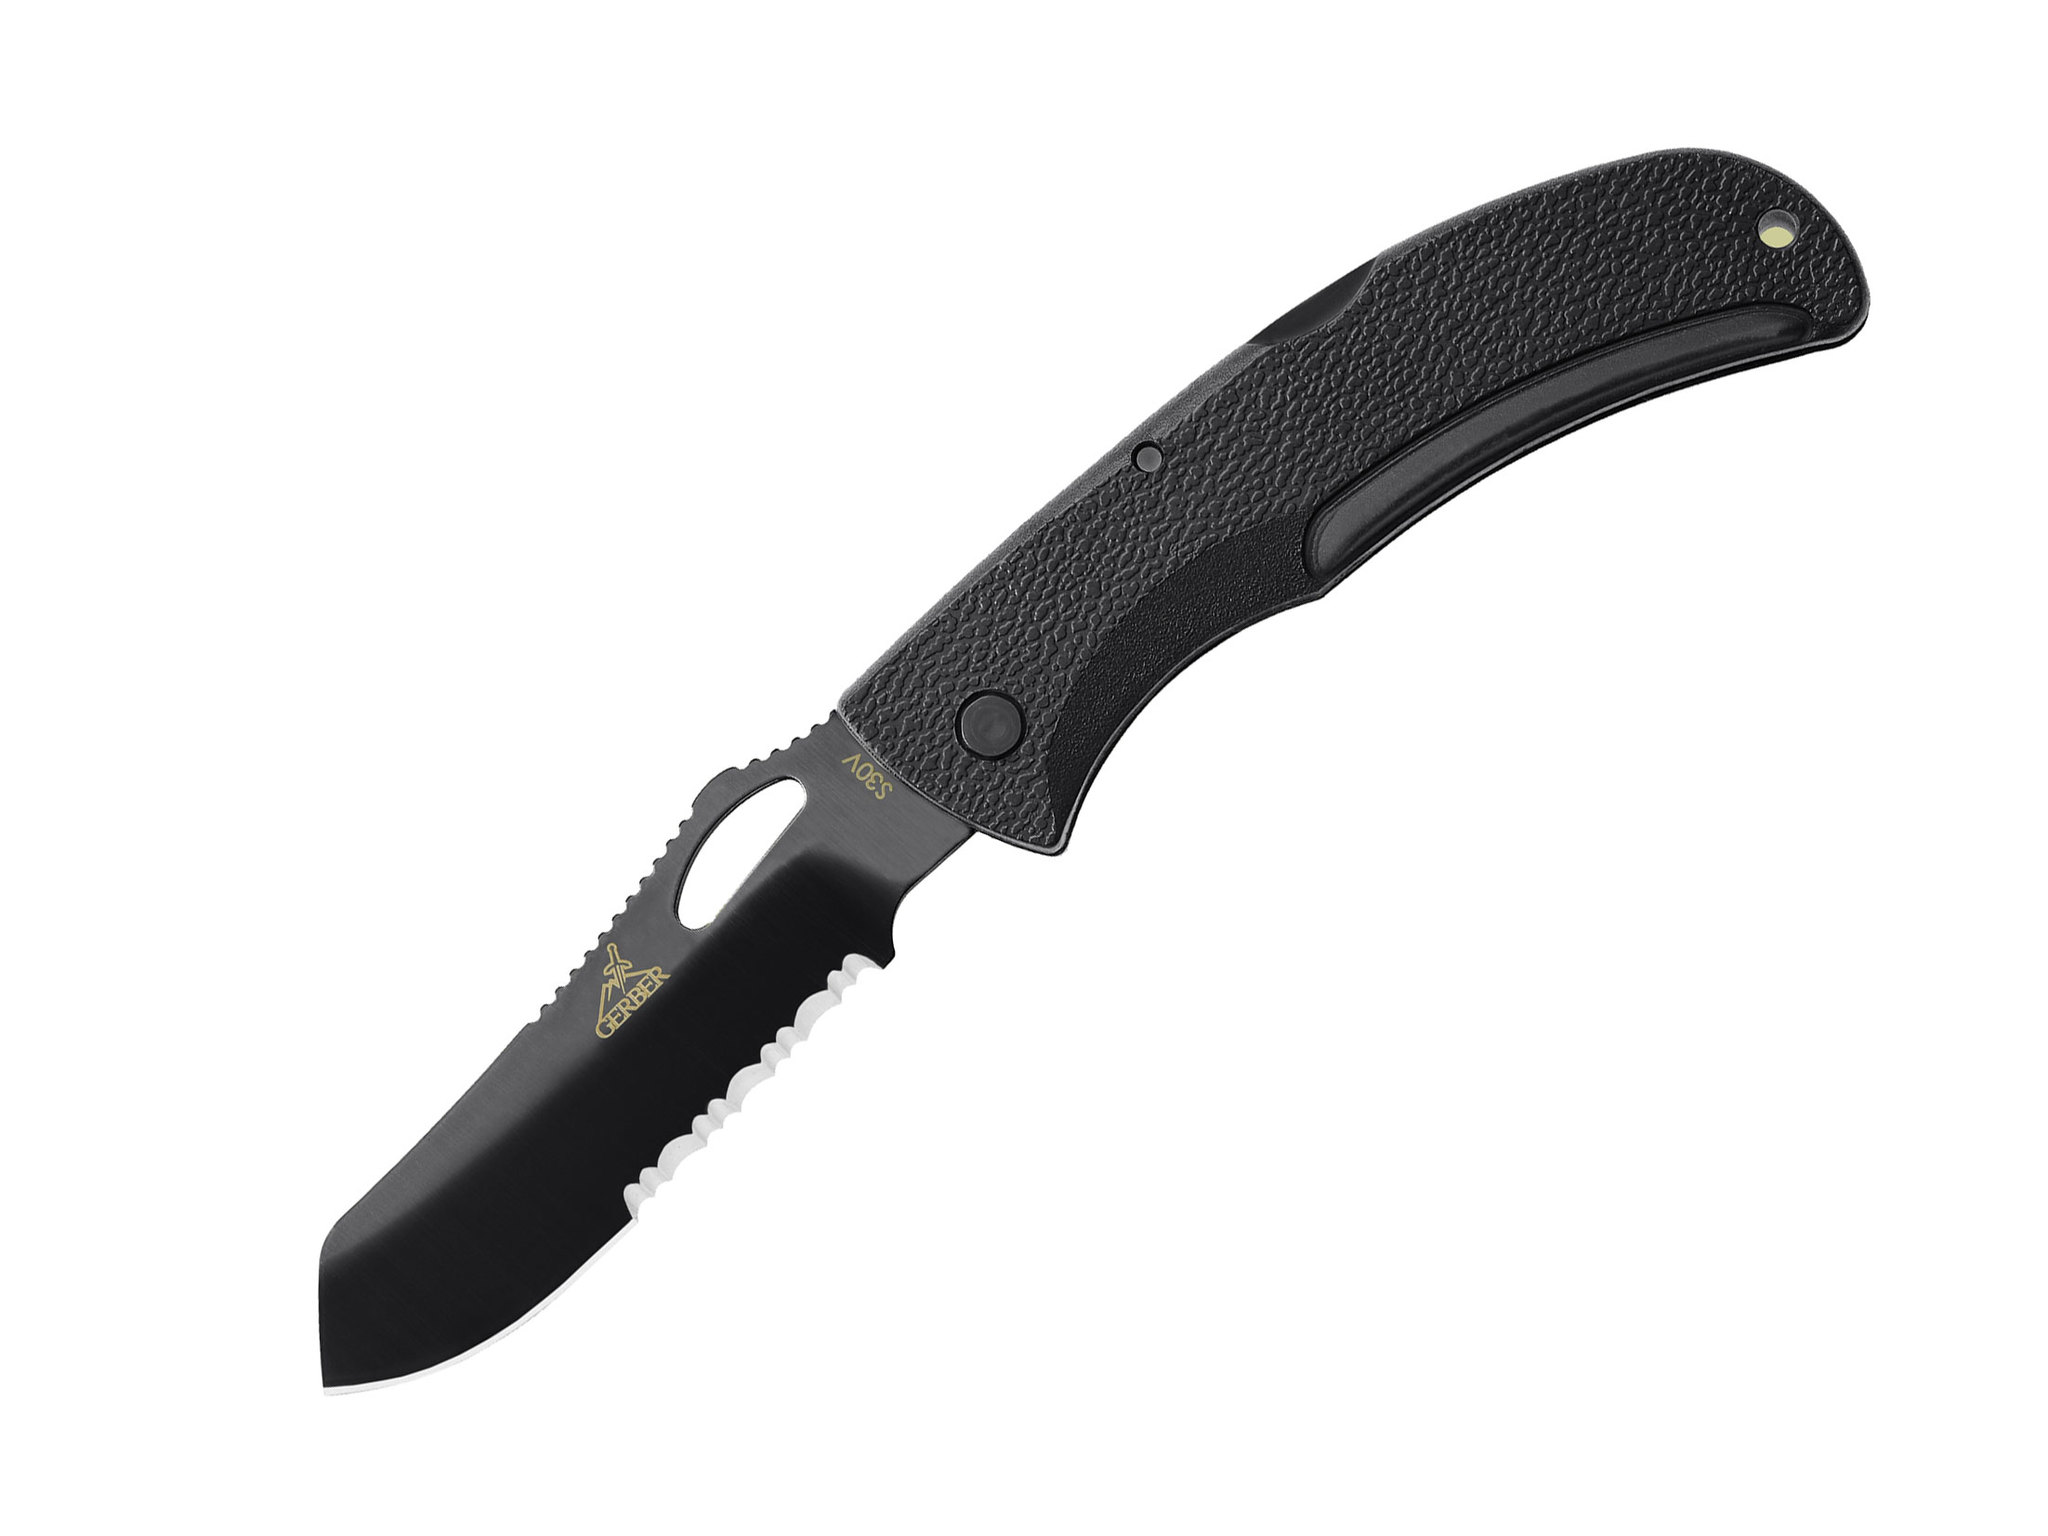 Складной нож Gerber E-Z Out Black, сталь CPM-S30V, рукоять термопластик GRN нож с фиксированным клинком gerber lmf ii сталь 420hc рукоять термопластик grn